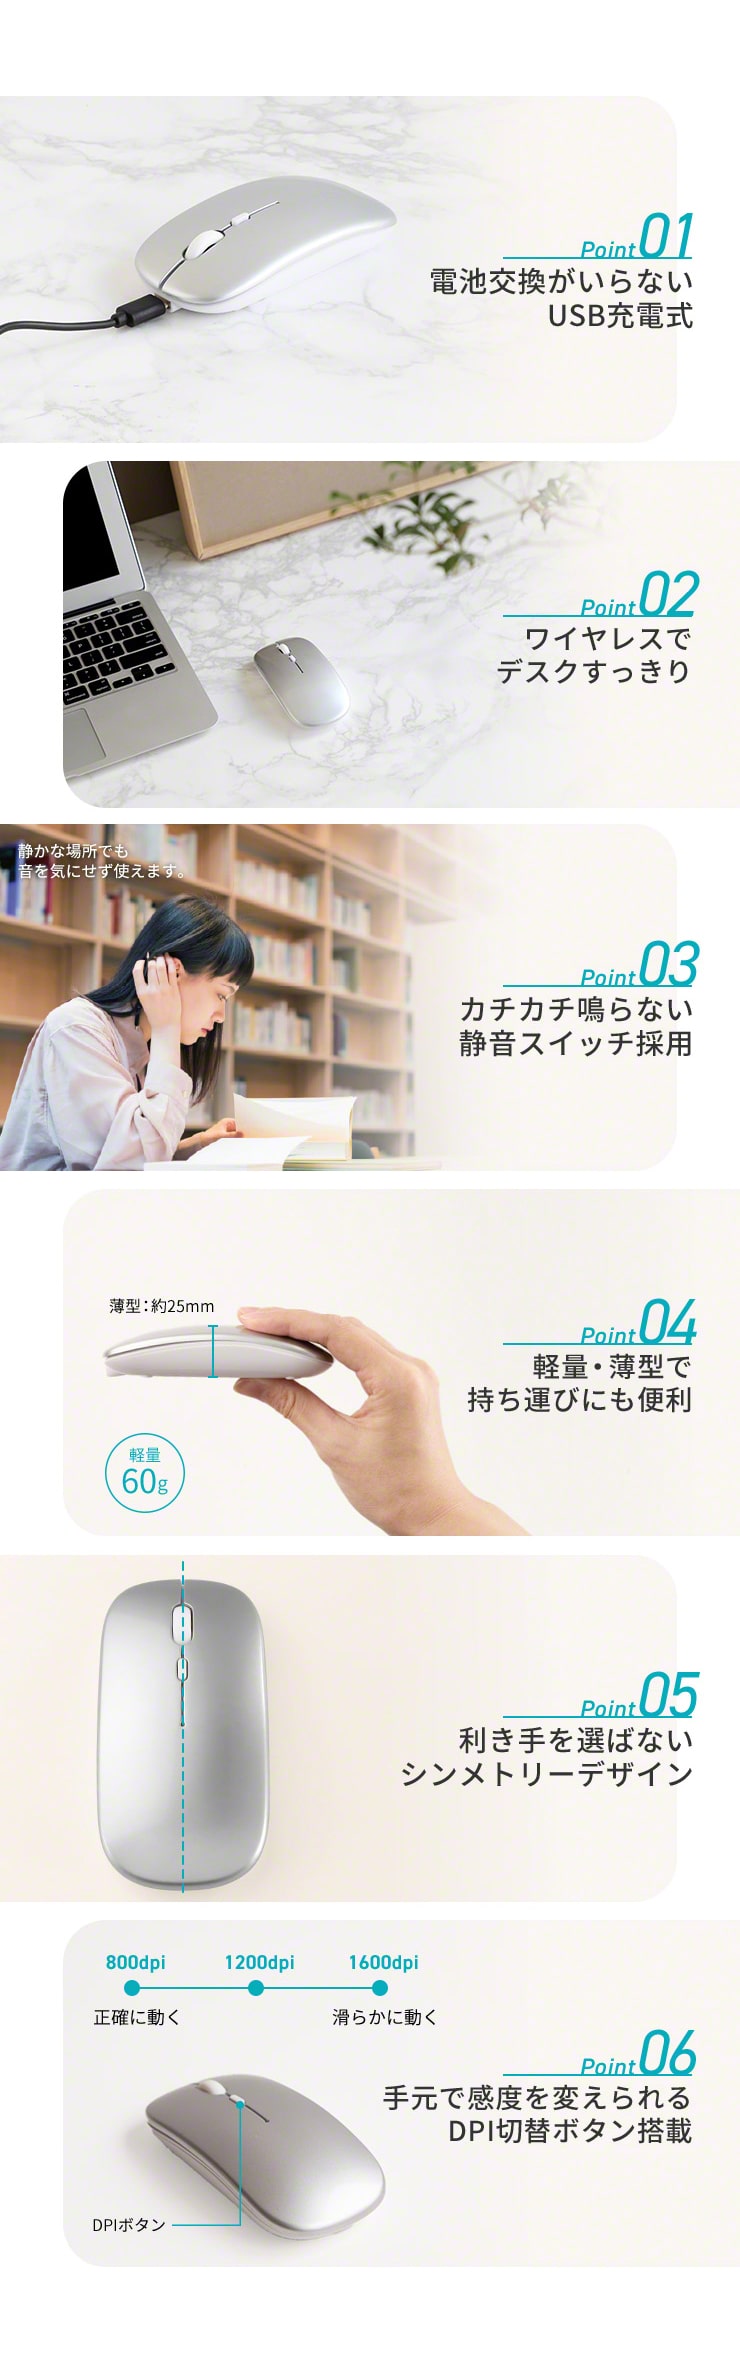 マウス 充電式 USB充電 ワイヤレス Bluetooth 無線